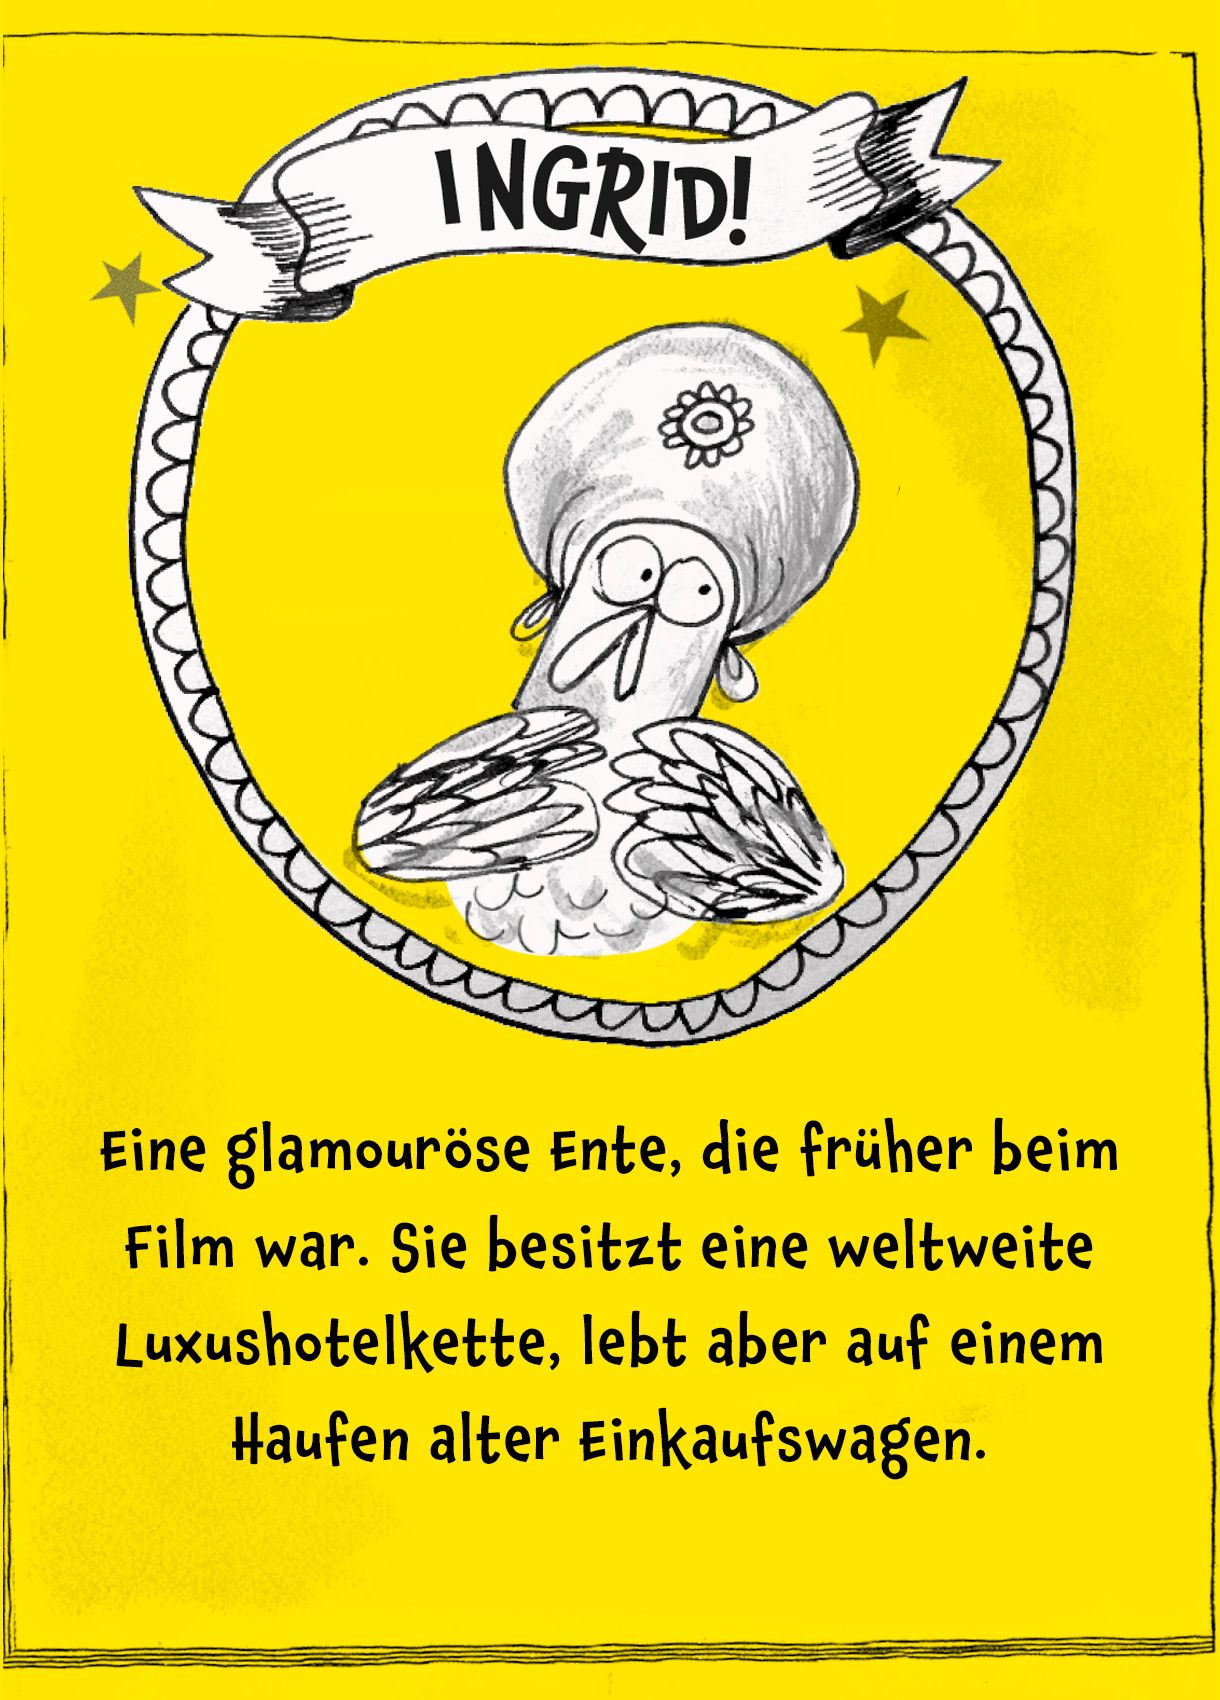 Bild von der Eule Ingrid, darunter der Text: "Eine glamouröse Ente, die früher beim Film war. Sie besitzt eine weltweite Luxushotelkette, lebt aber auf einem Haufen alter Einkaufswagen."